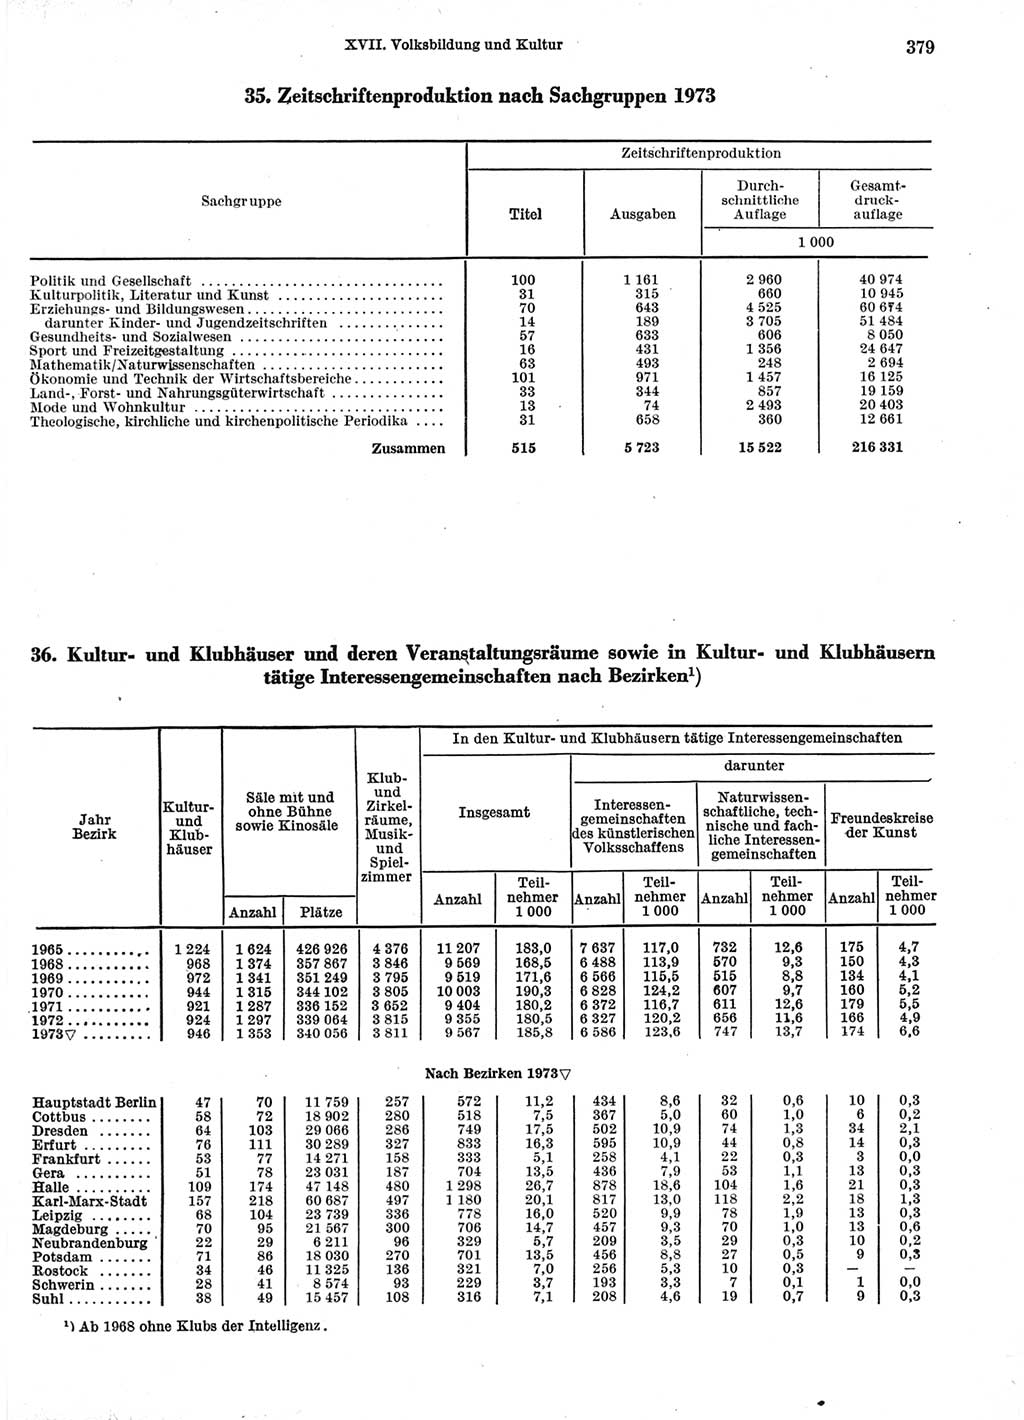 Statistisches Jahrbuch der Deutschen Demokratischen Republik (DDR) 1974, Seite 379 (Stat. Jb. DDR 1974, S. 379)